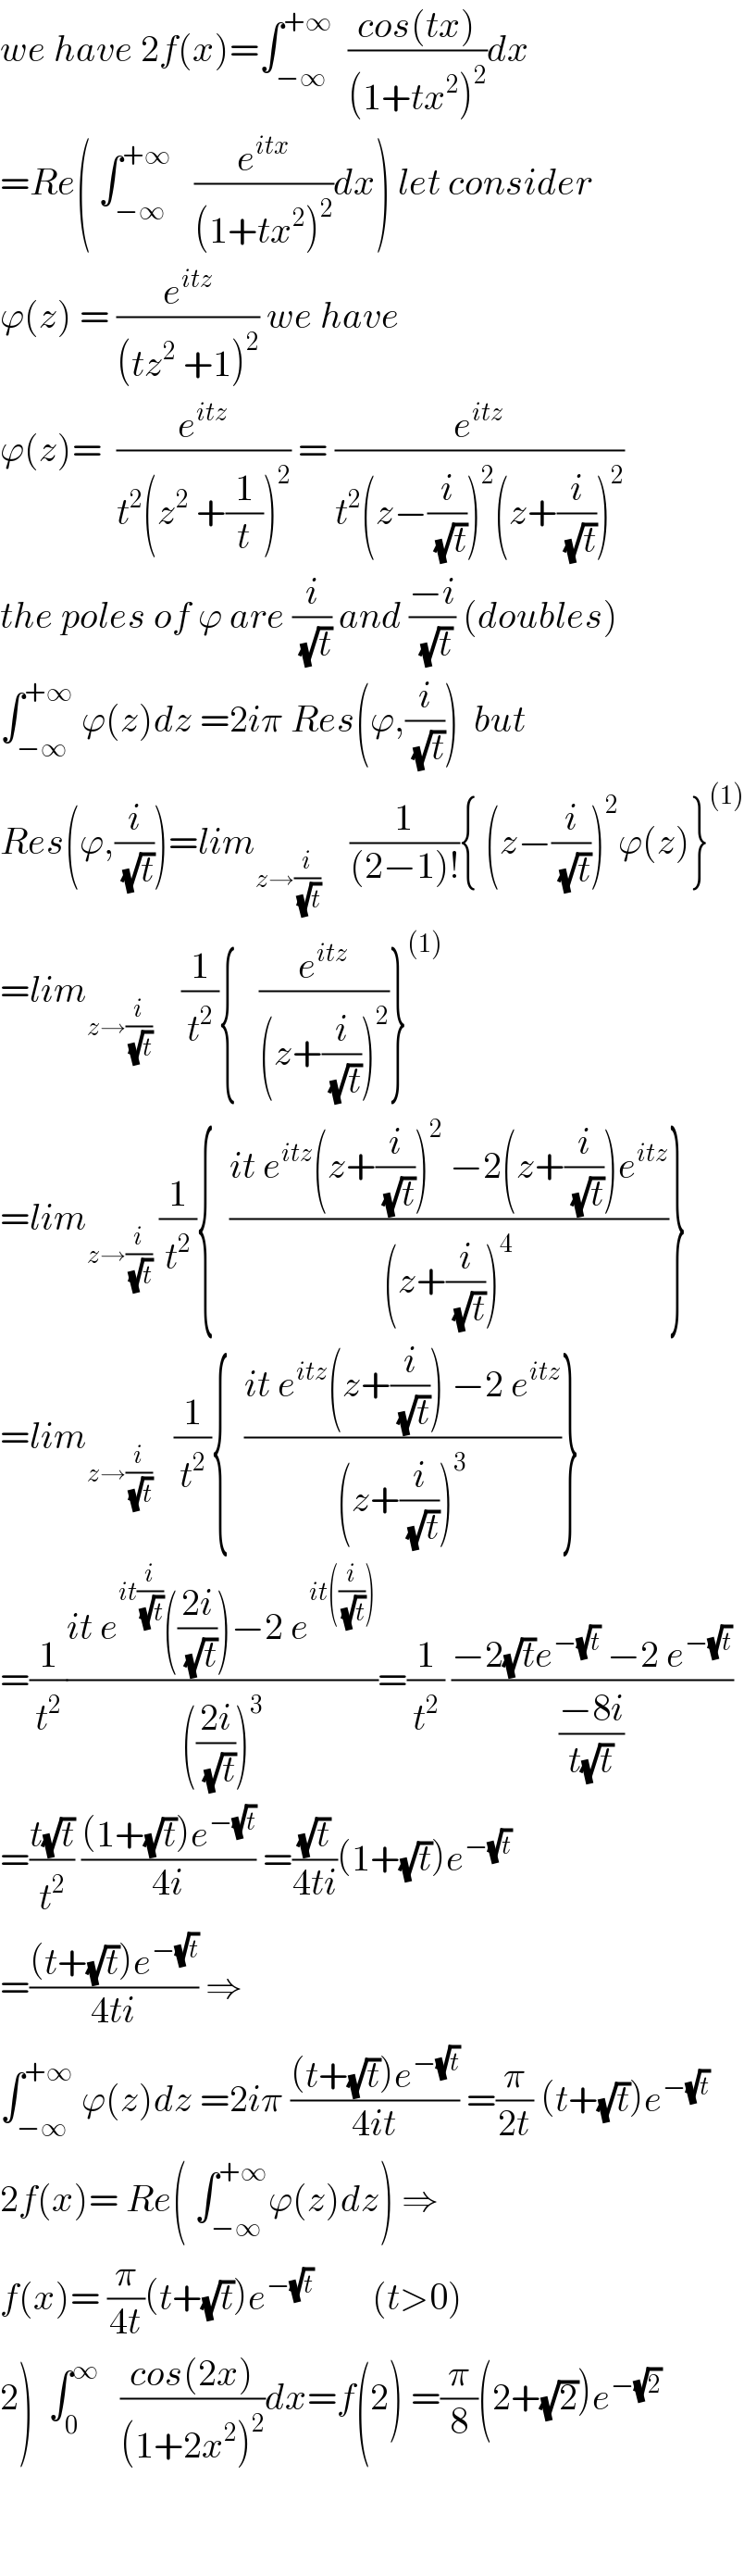 we have 2f(x)=∫_(−∞) ^(+∞)   ((cos(tx))/((1+tx^2 )^2 ))dx  =Re( ∫_(−∞) ^(+∞)    (e^(itx) /((1+tx^2 )^2 ))dx) let consider  ϕ(z) = (e^(itz) /((tz^2  +1)^2 )) we have   ϕ(z)=  (e^(itz) /(t^2 (z^2  +(1/t))^2 )) = (e^(itz) /(t^2 (z−(i/(√t)))^2 (z+(i/(√t)))^2 ))  the poles of ϕ are (i/(√t)) and ((−i)/(√t)) (doubles)  ∫_(−∞) ^(+∞)  ϕ(z)dz =2iπ Res(ϕ,(i/(√t)))  but  Res(ϕ,(i/(√t)))=lim_(z→(i/(√t)))     (1/((2−1)!)){ (z−(i/(√t)))^2 ϕ(z)}^((1))   =lim_(z→(i/(√t)))     (1/t^2 ){   (e^(itz) /((z+(i/(√t)))^2 ))}^((1))   =lim_(z→(i/(√t)))  (1/t^2 ){  ((it e^(itz) (z+(i/(√t)))^2  −2(z+(i/(√t)))e^(itz) )/((z+(i/(√t)))^4 ))}  =lim_(z→(i/(√t)))    (1/t^2 ){  ((it e^(itz) (z+(i/(√t))) −2 e^(itz) )/((z+(i/(√t)))^3 ))}  =(1/t^2 )((it e^(it(i/(√t))) (((2i)/(√t)))−2 e^(it((i/(√t)))) )/((((2i)/(√t)))^3 ))=(1/t^2 ) ((−2(√t)e^(−(√t))  −2 e^(−(√t)) )/((−8i)/(t(√t))))  =((t(√t))/t^2 ) (((1+(√t))e^(−(√t)) )/(4i)) =((√t)/(4ti))(1+(√t))e^(−(√t))   =(((t+(√t))e^(−(√t)) )/(4ti)) ⇒  ∫_(−∞) ^(+∞)  ϕ(z)dz =2iπ (((t+(√t))e^(−(√t)) )/(4it)) =(π/(2t)) (t+(√t))e^(−(√t))   2f(x)= Re( ∫_(−∞) ^(+∞) ϕ(z)dz) ⇒  f(x)= (π/(4t))(t+(√t))e^(−(√t))         (t>0)  2)  ∫_0 ^∞    ((cos(2x))/((1+2x^2 )^2 ))dx=f(2) =(π/8)(2+(√2))e^(−(√2))       